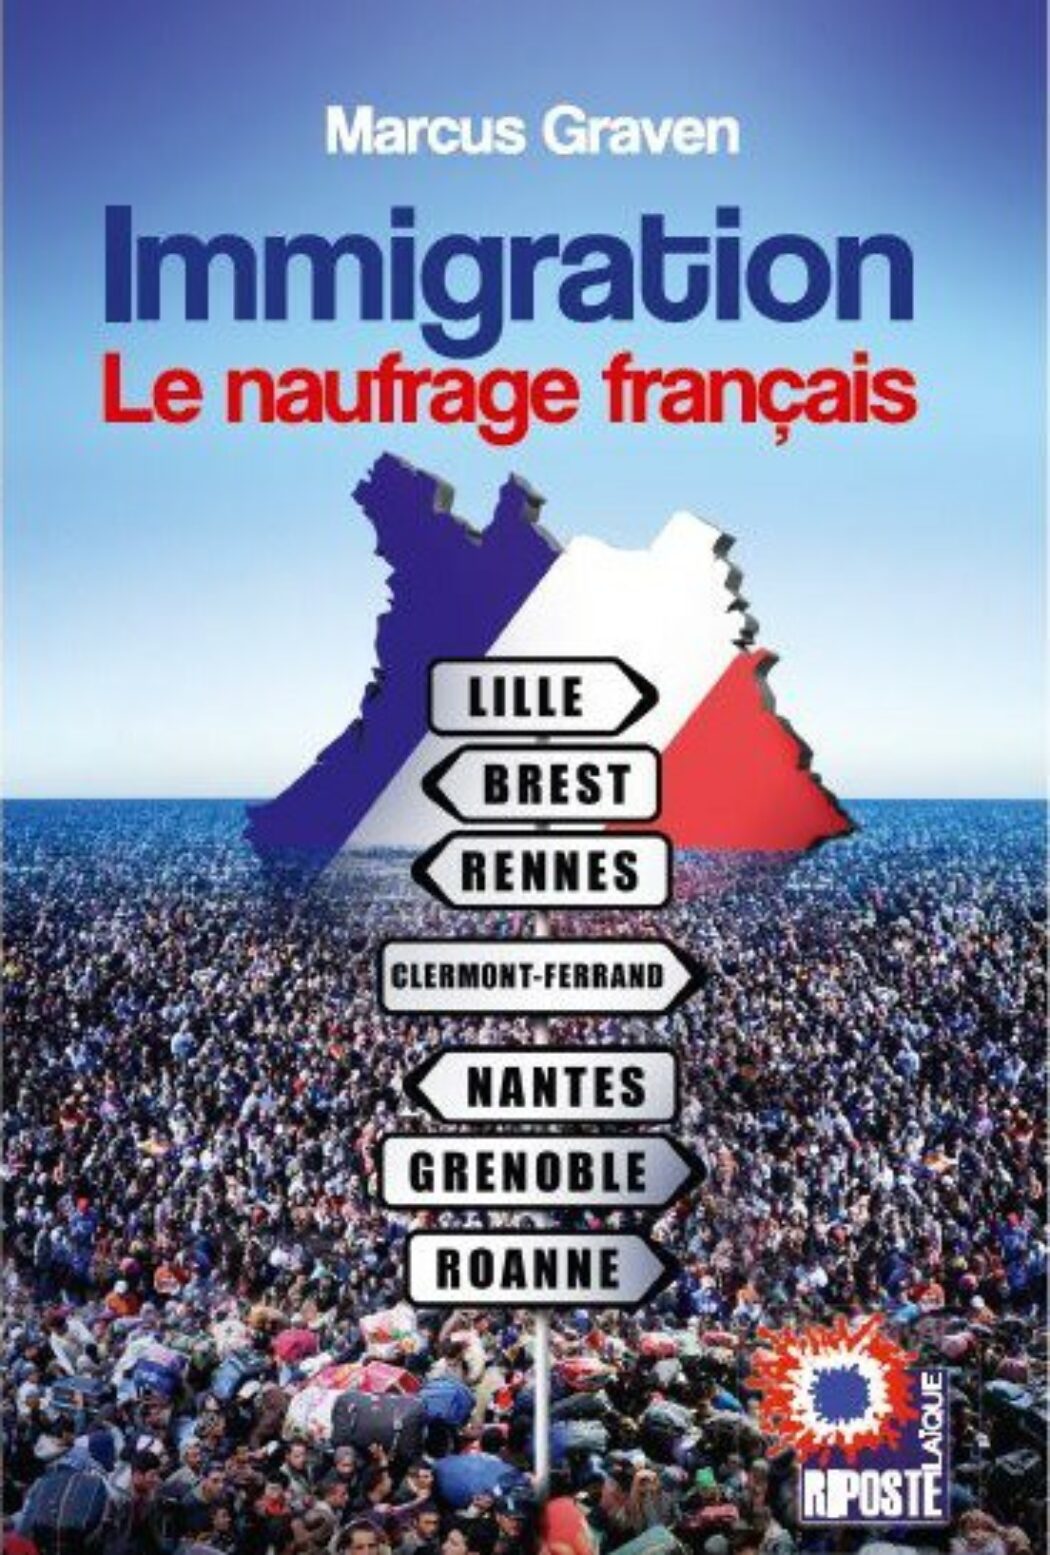 Finkielkraut : “La France est confrontée à une immigration incontrôlée et connaît une mutation démographique sans précédent dans son histoire. Je ne suis pas sûr que nous puissions nous en remettre”